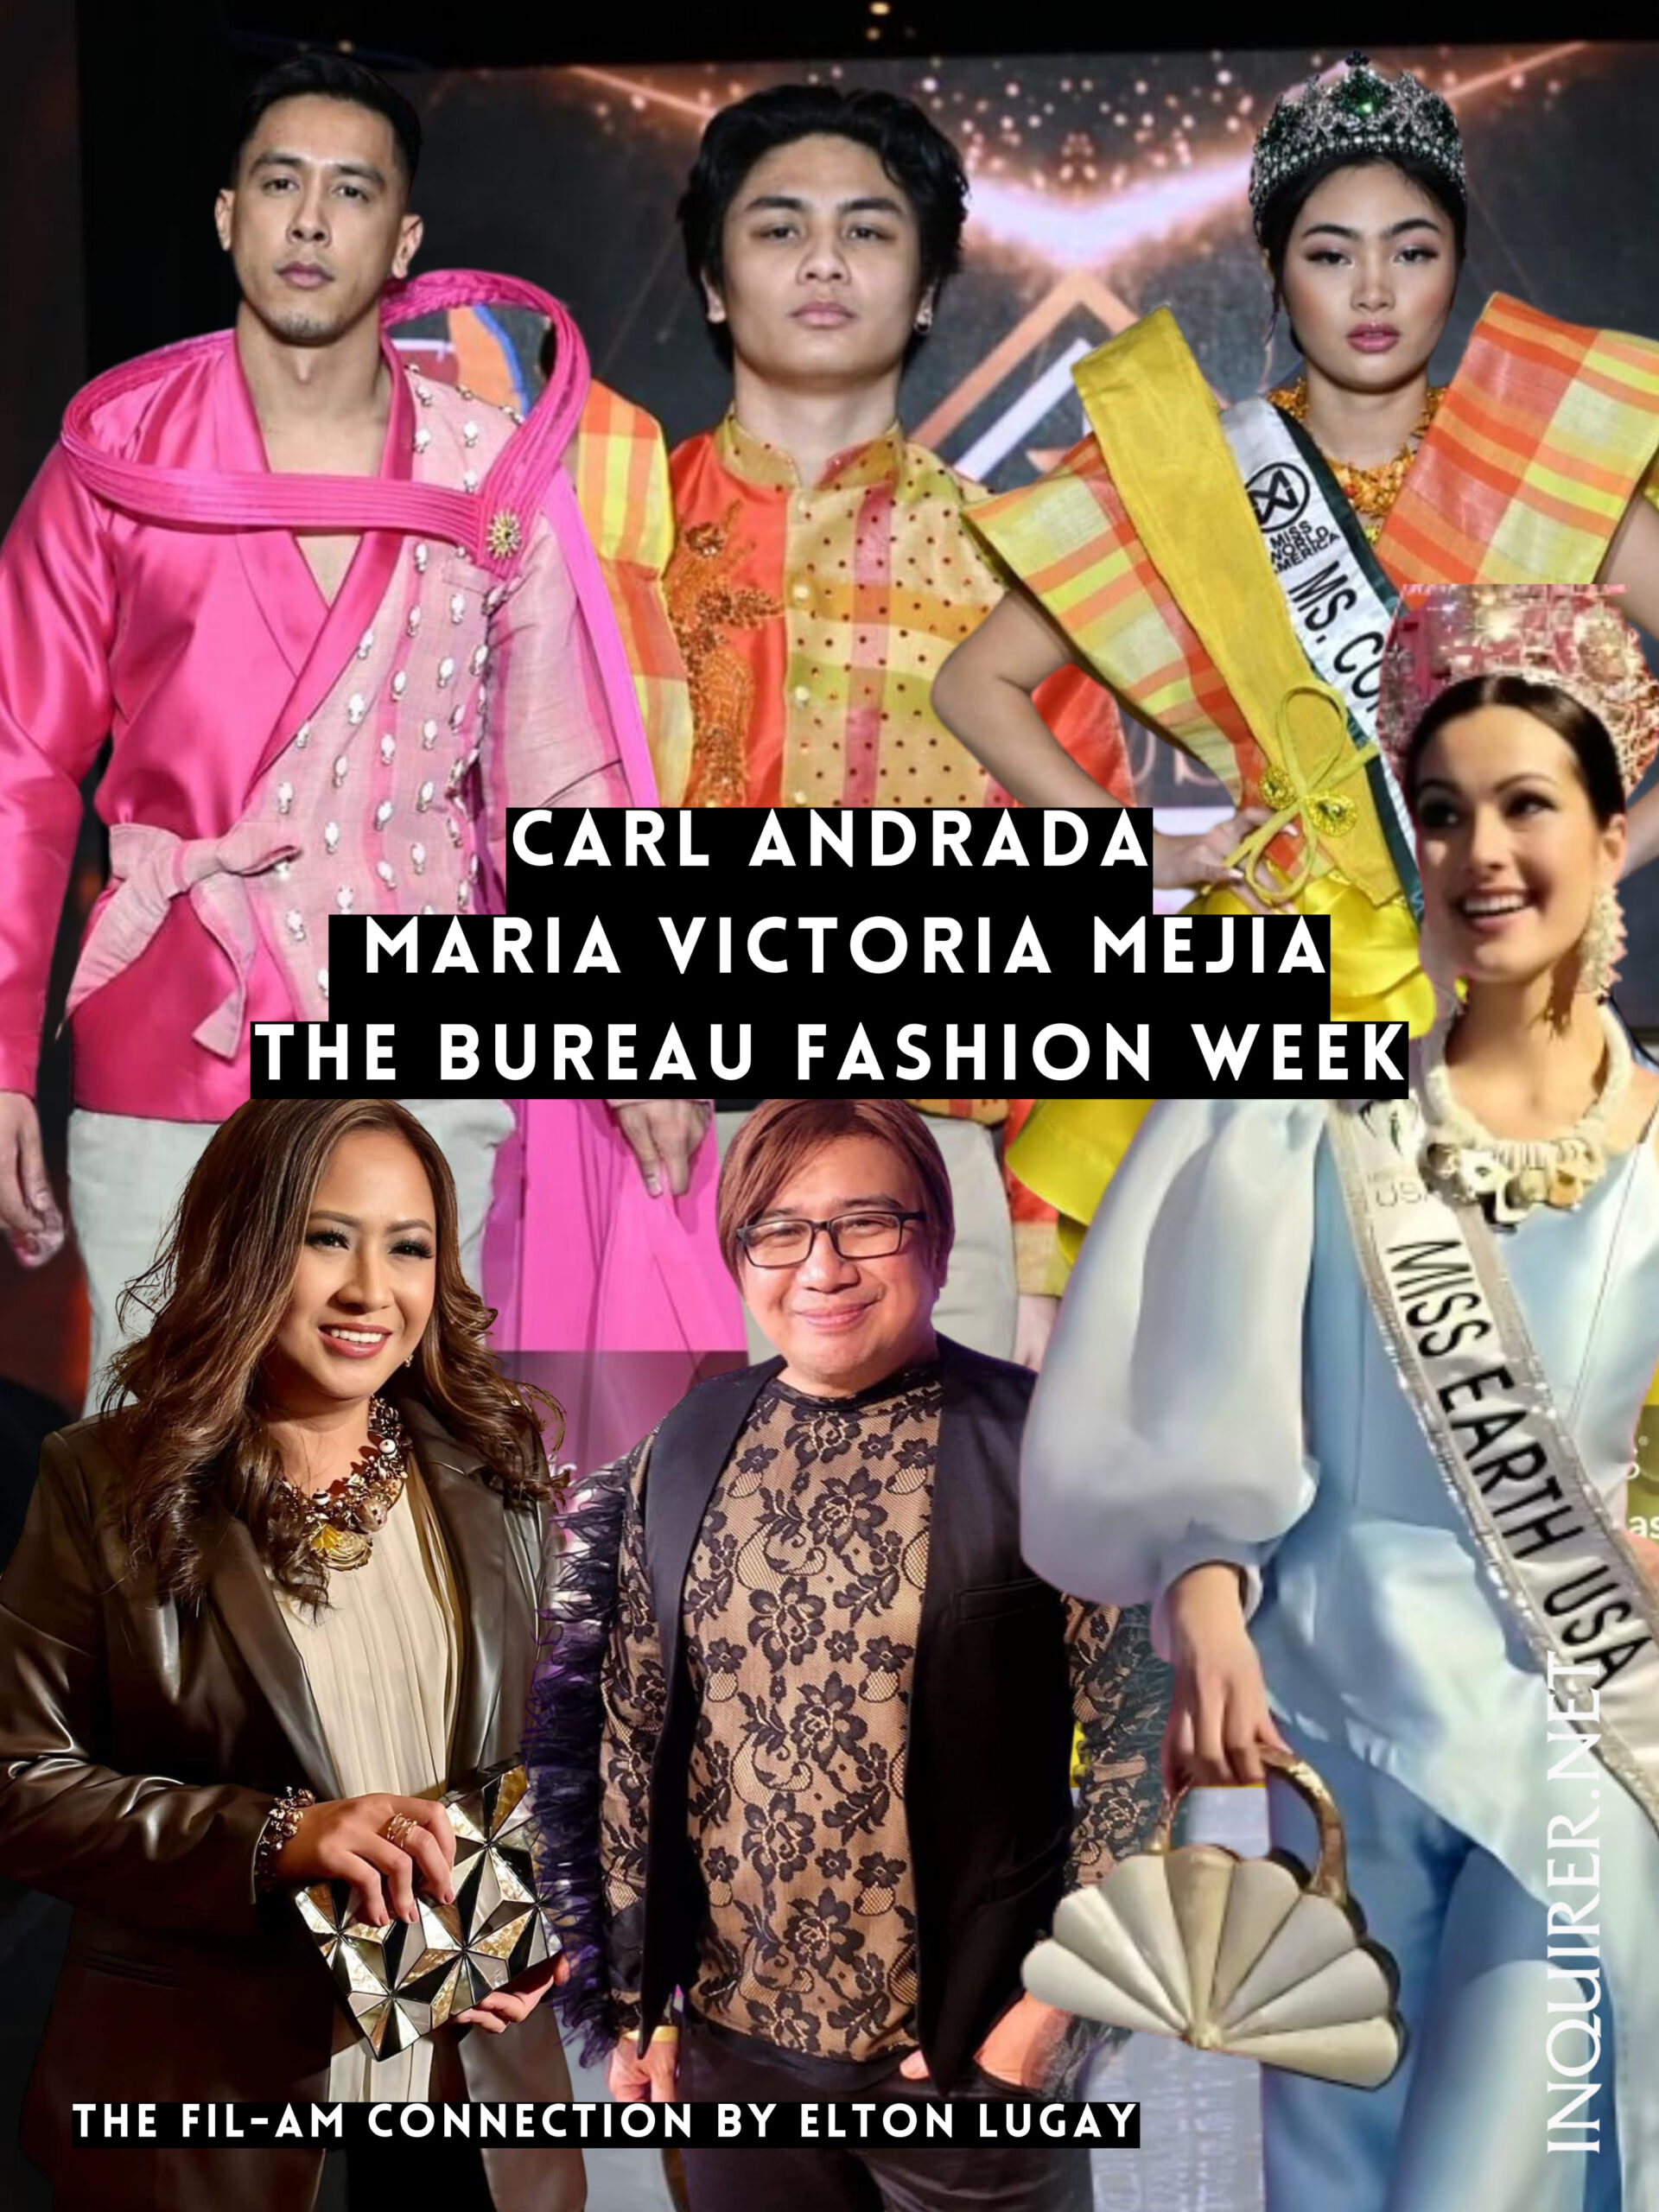 What to wear to Fashion Week? - The Bureau Fashion Week